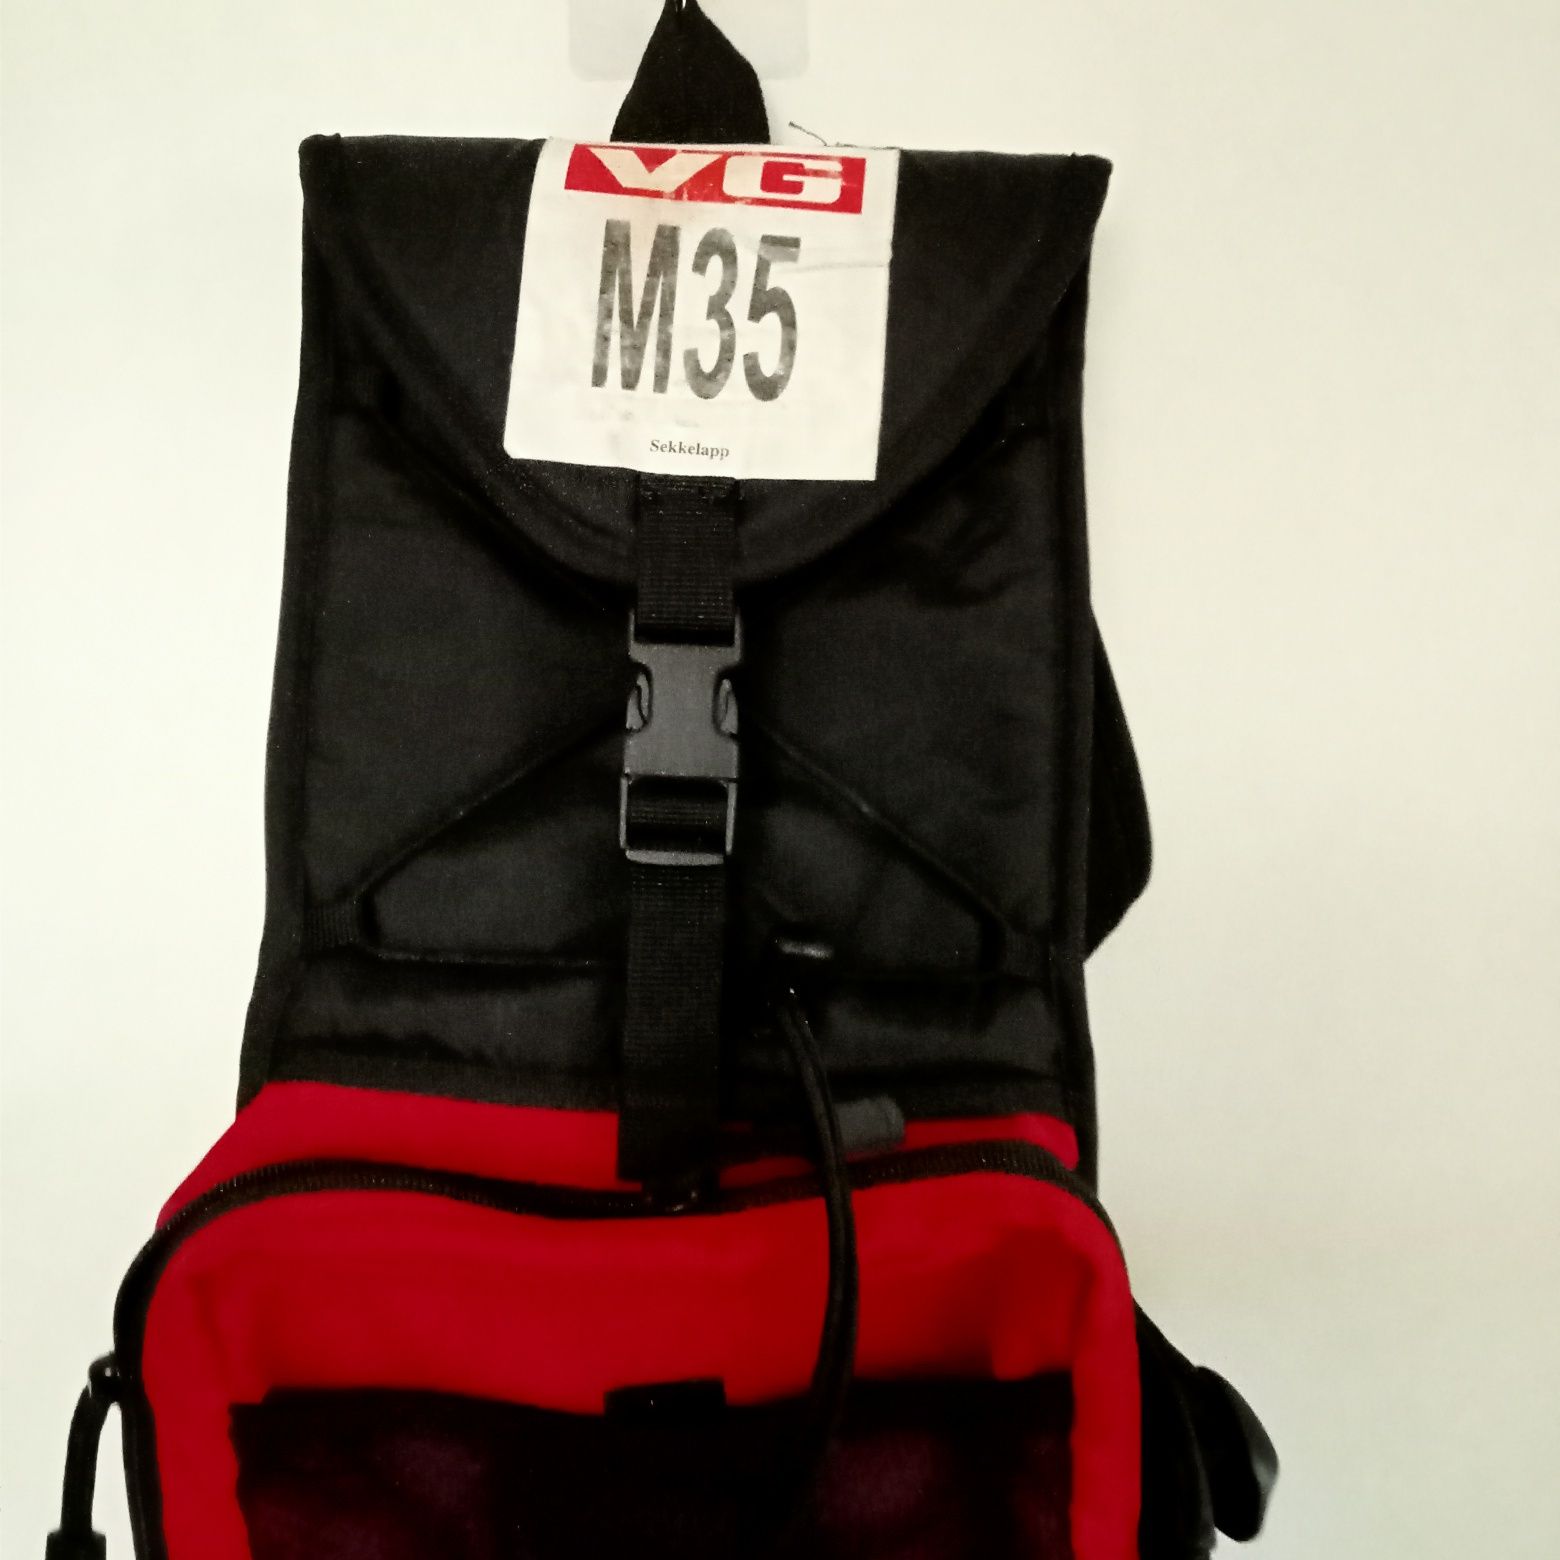 Plecak biegowy rowerowy M35 vg